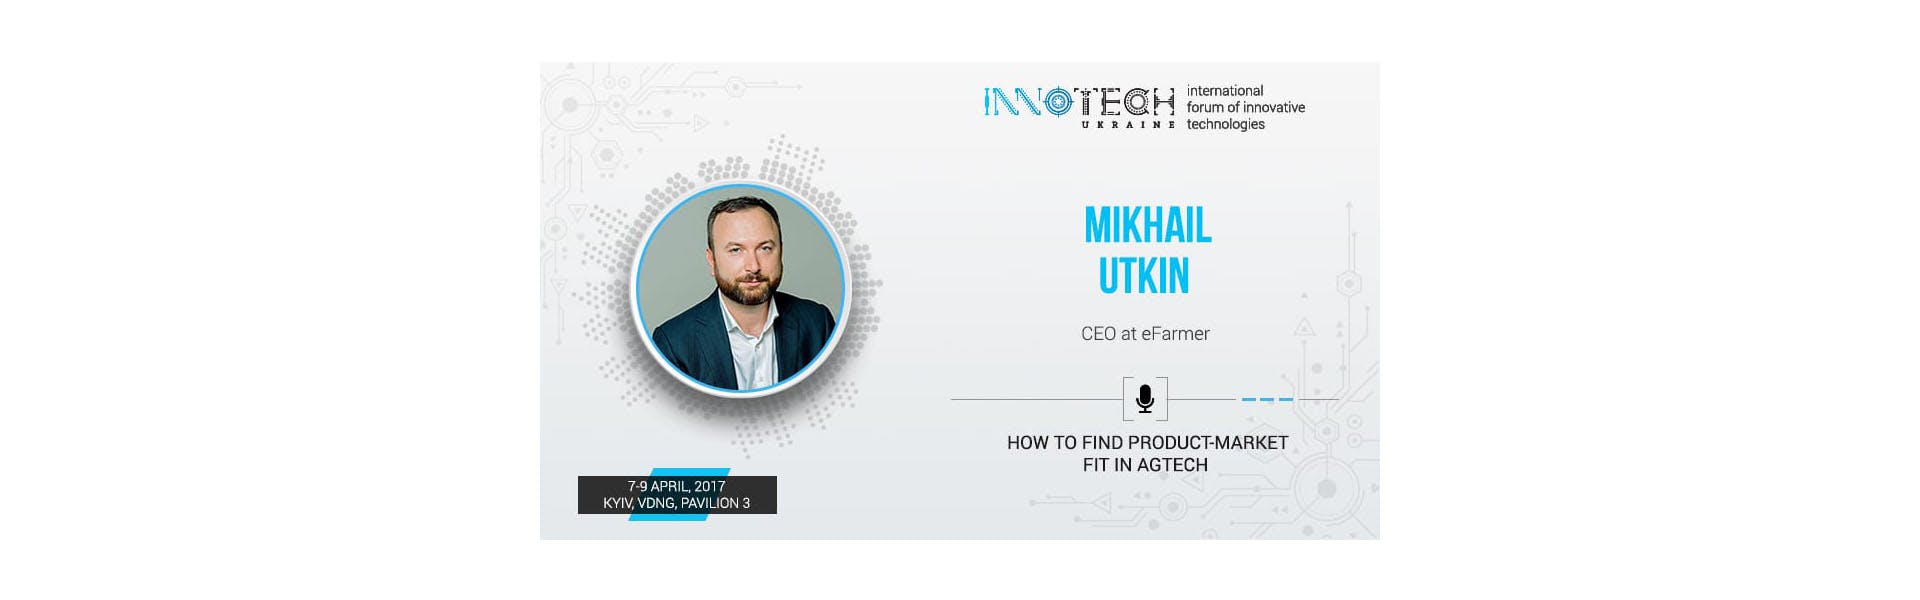 CEO von eFarmer Michael Utkin wird auf der Innotech 2017 über AgTech sprechen